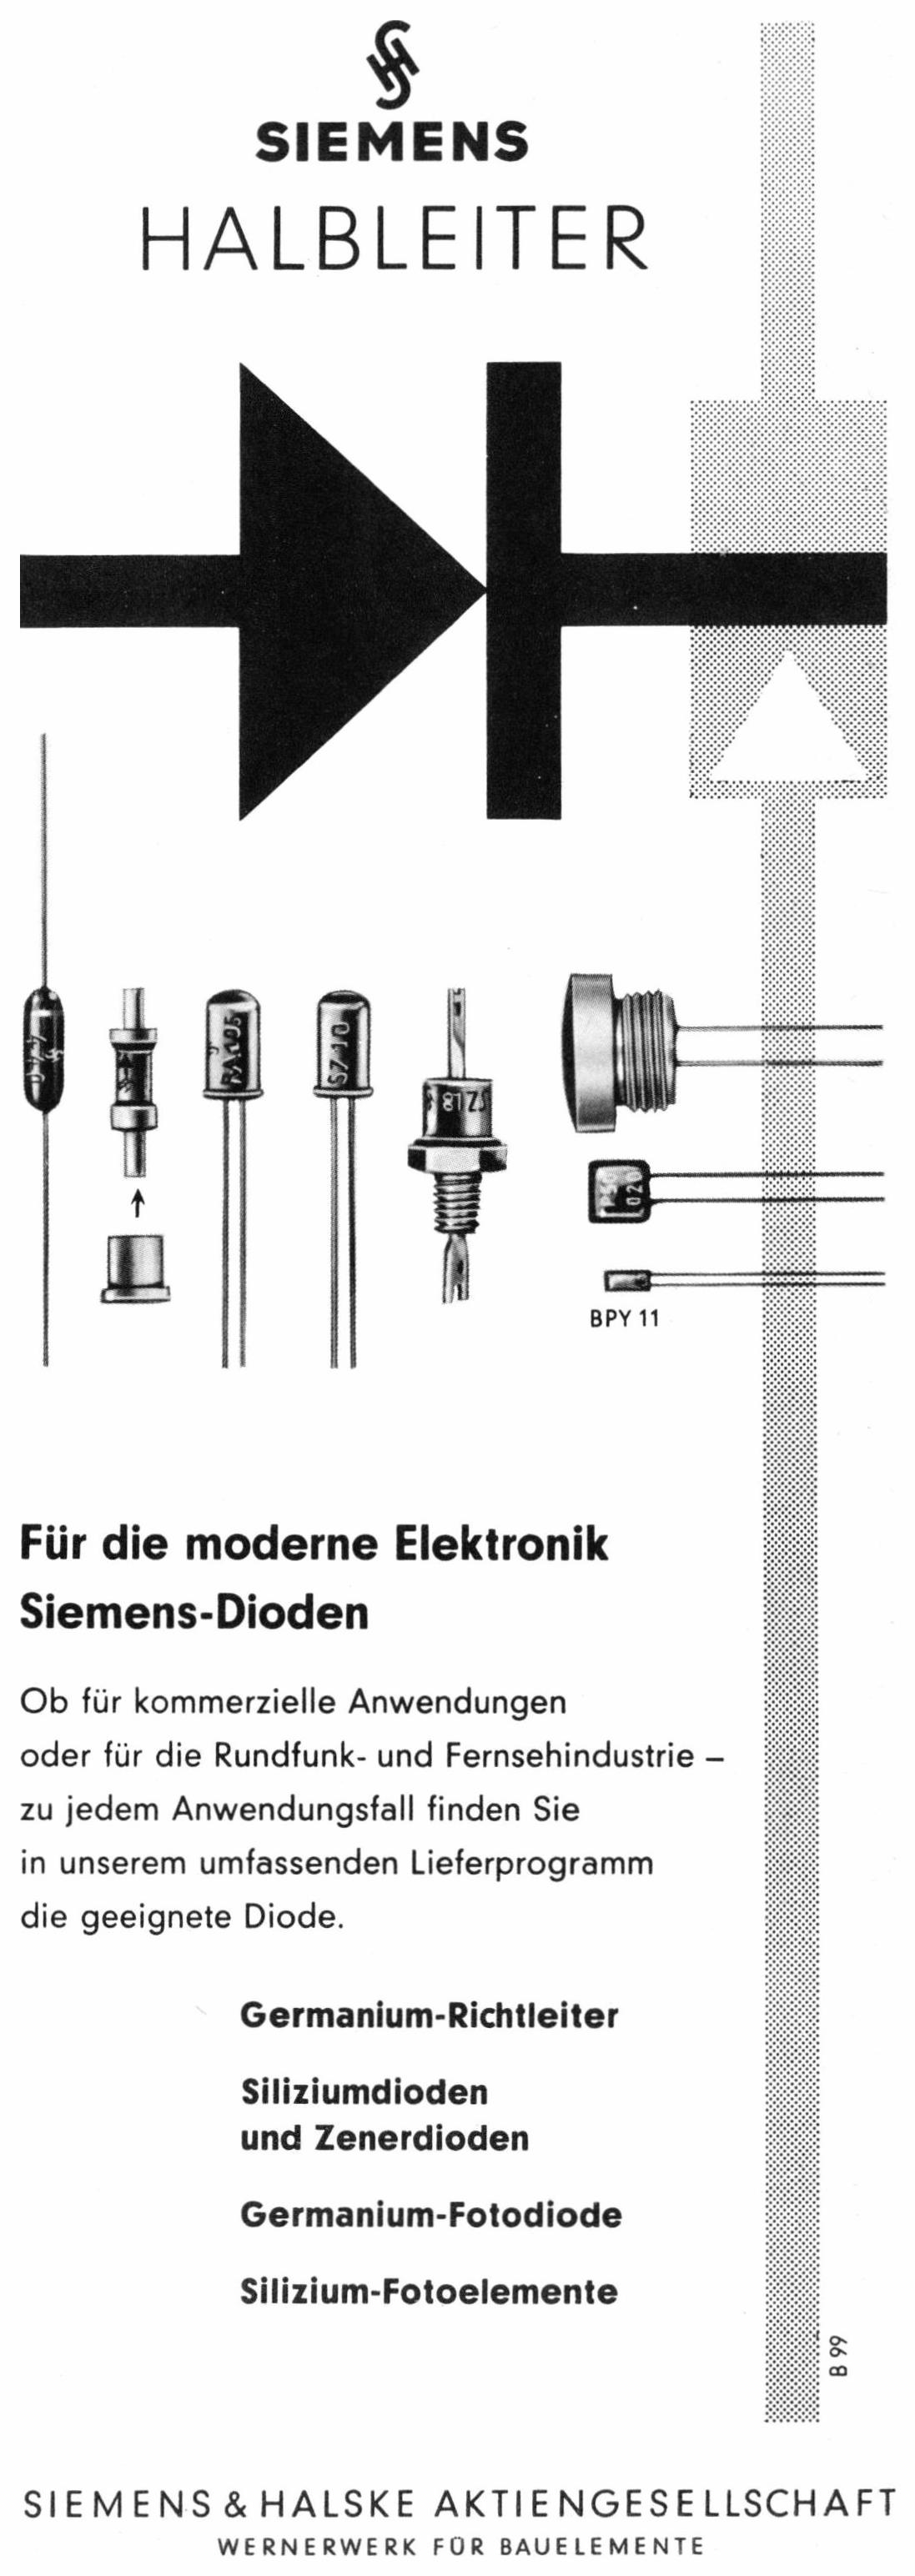 Siemens 1961 2.jpg